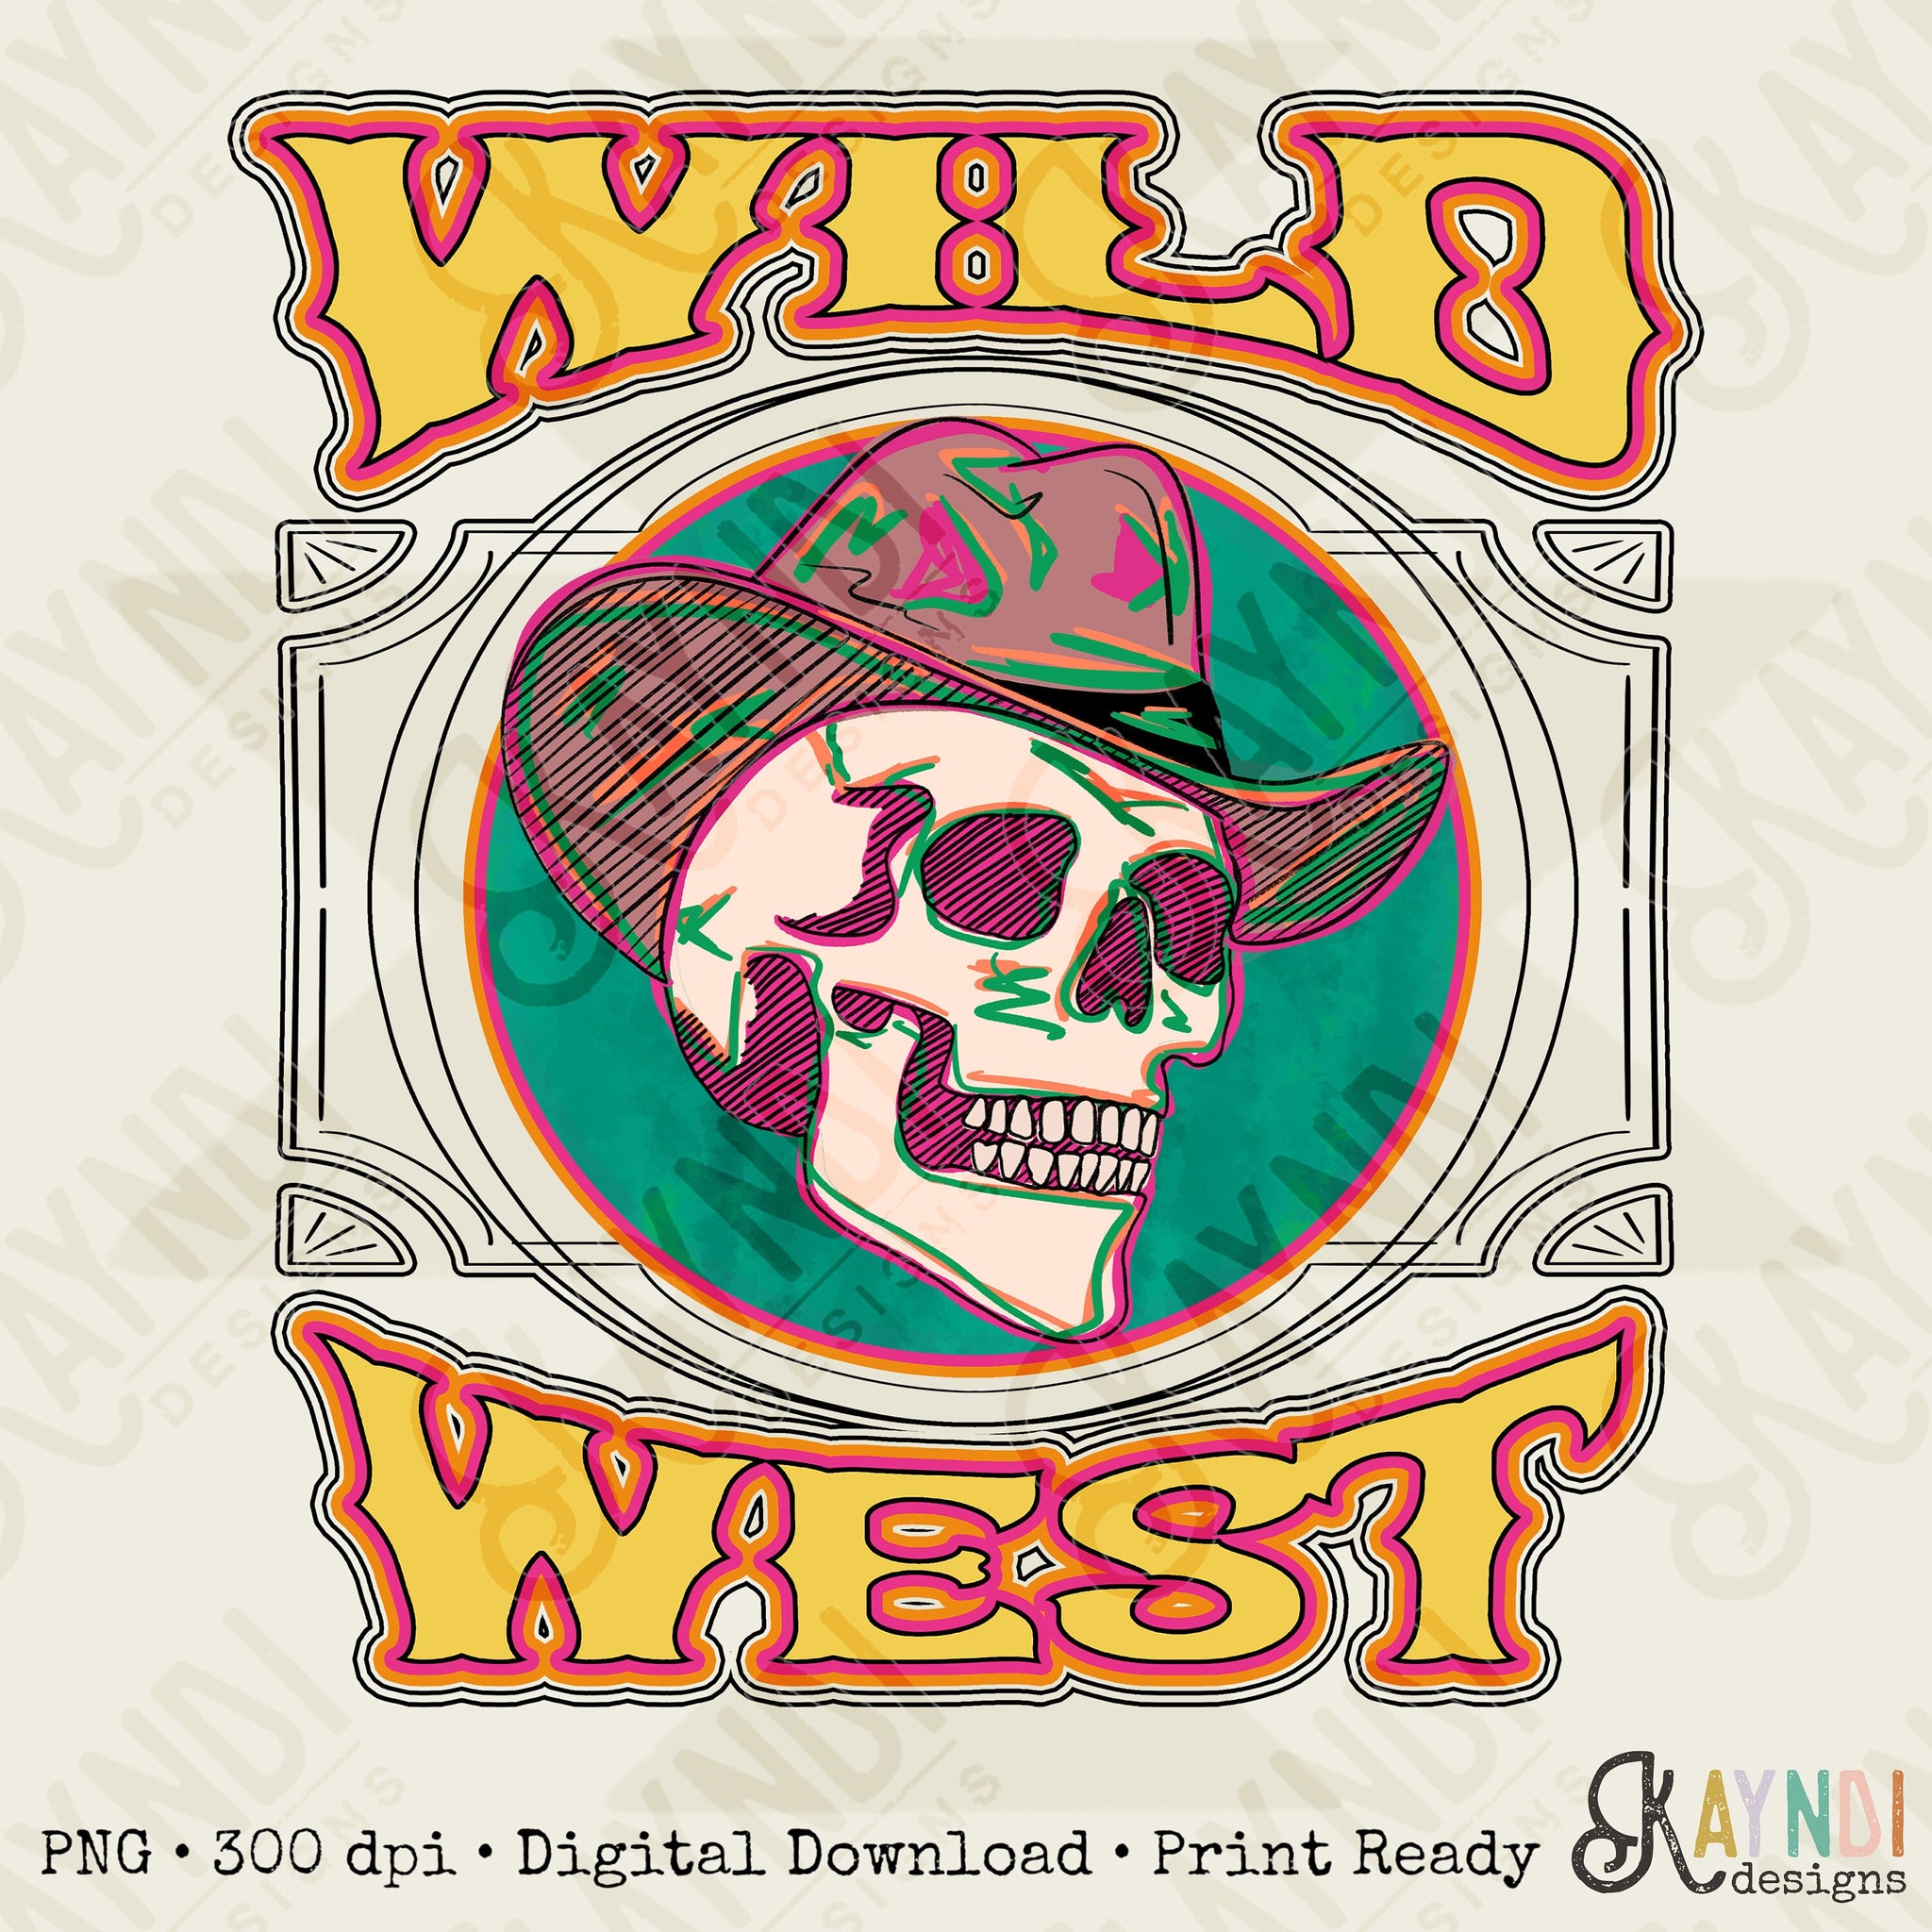 Vintage Wild West Sublimation Design PNG Digital Download Printable